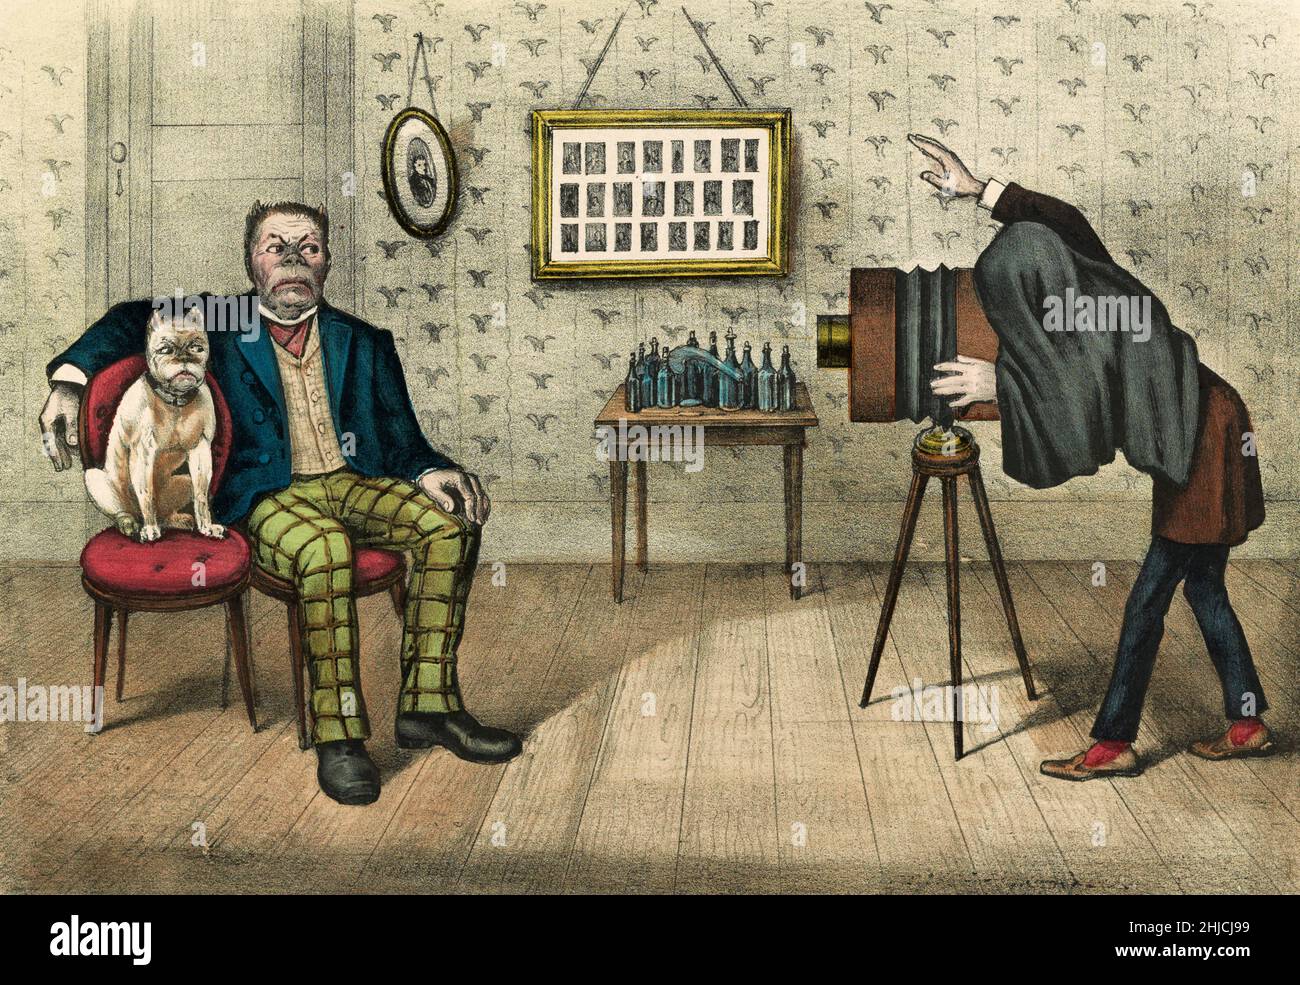 Komischer Druck, der das Atelier eines Fotografen mit einem Mann zeigt, dessen Gesicht zu dem seiner Bulldogge passt; beide schimpften die Kamera an. Currier & Ives, 1890. Stockfoto